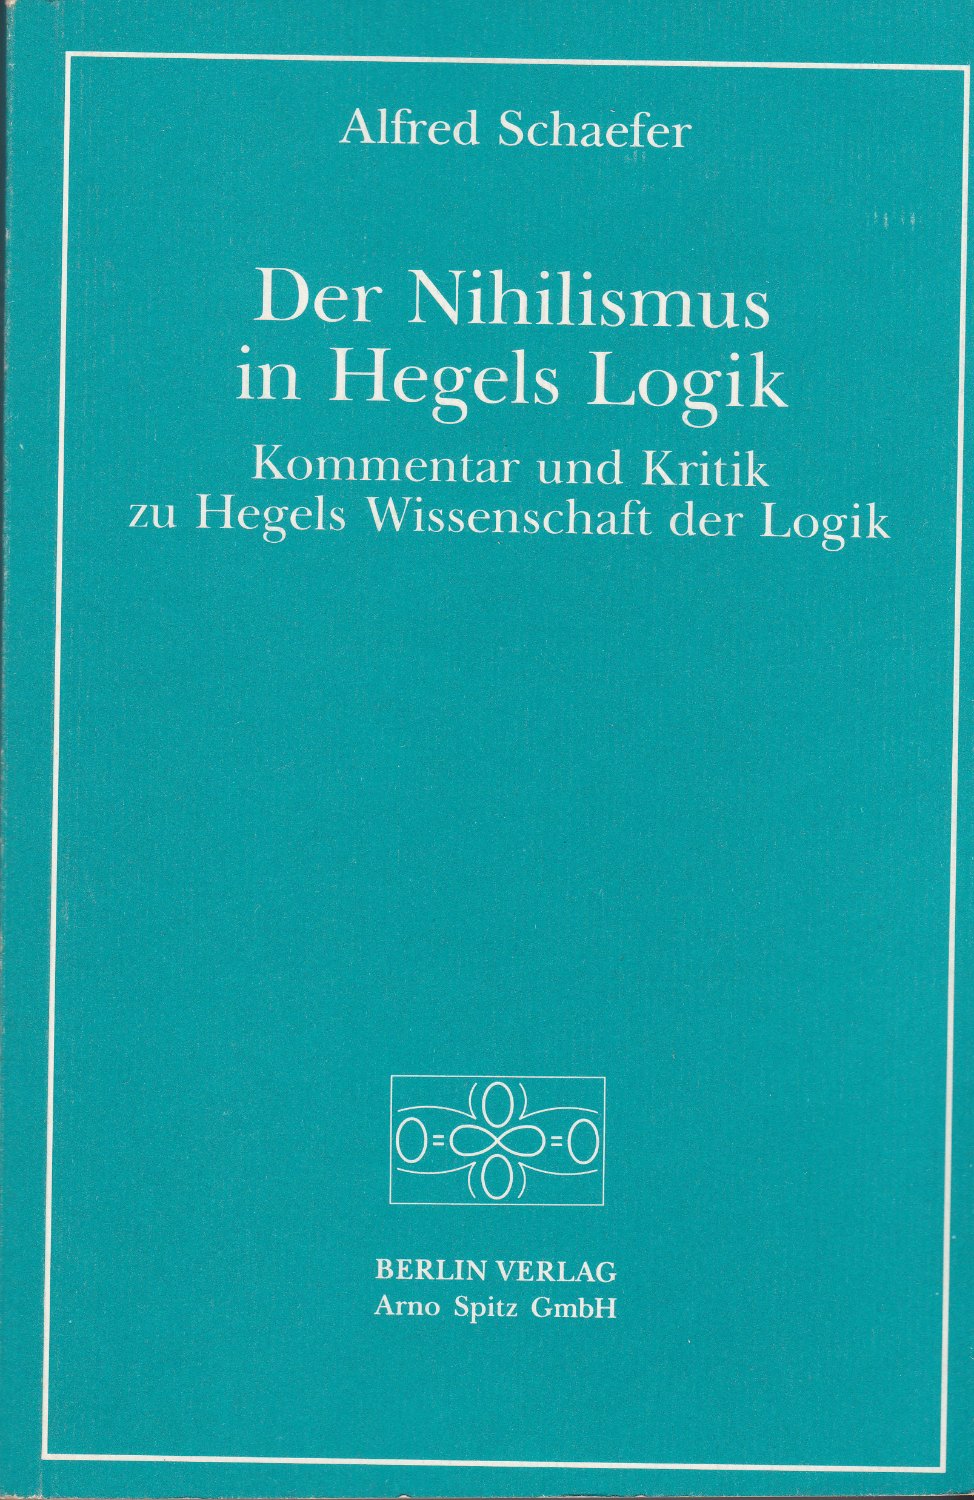 Der Nihilismus in Hegels Logik : Kommentar und Kritik zu Hegels Wissenschaft der Logik.